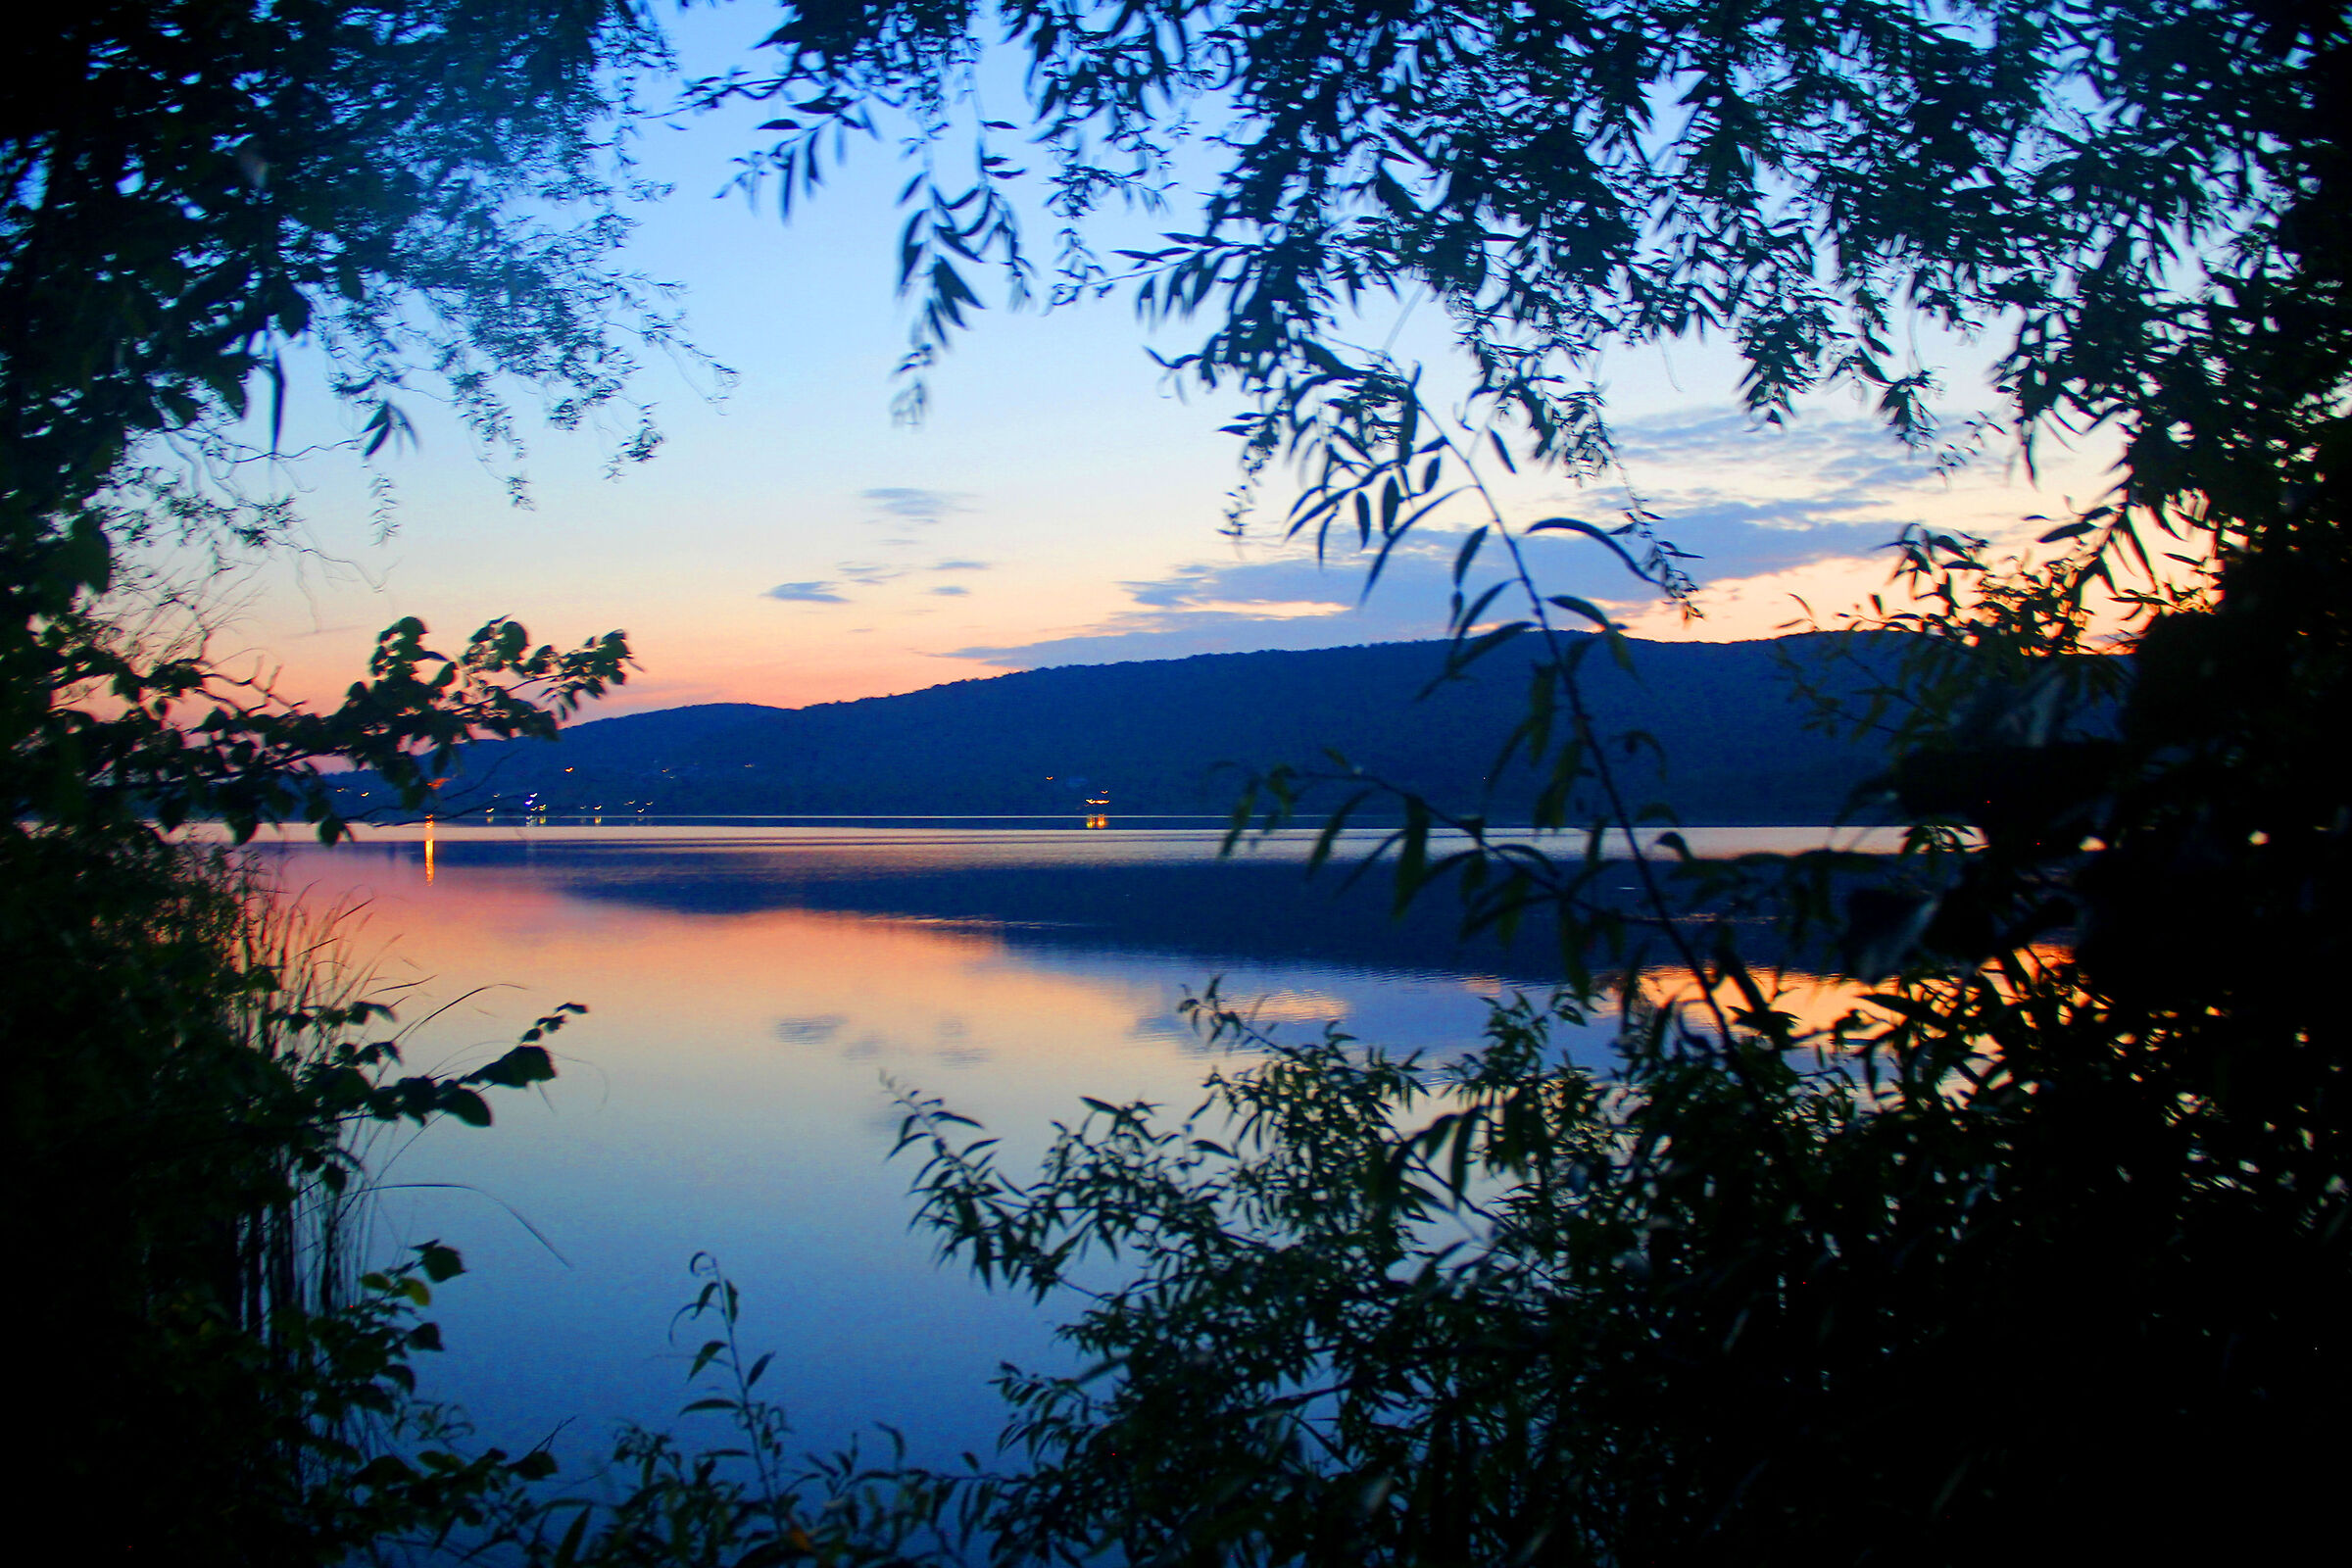 varano borghi - tramonto sul lago...